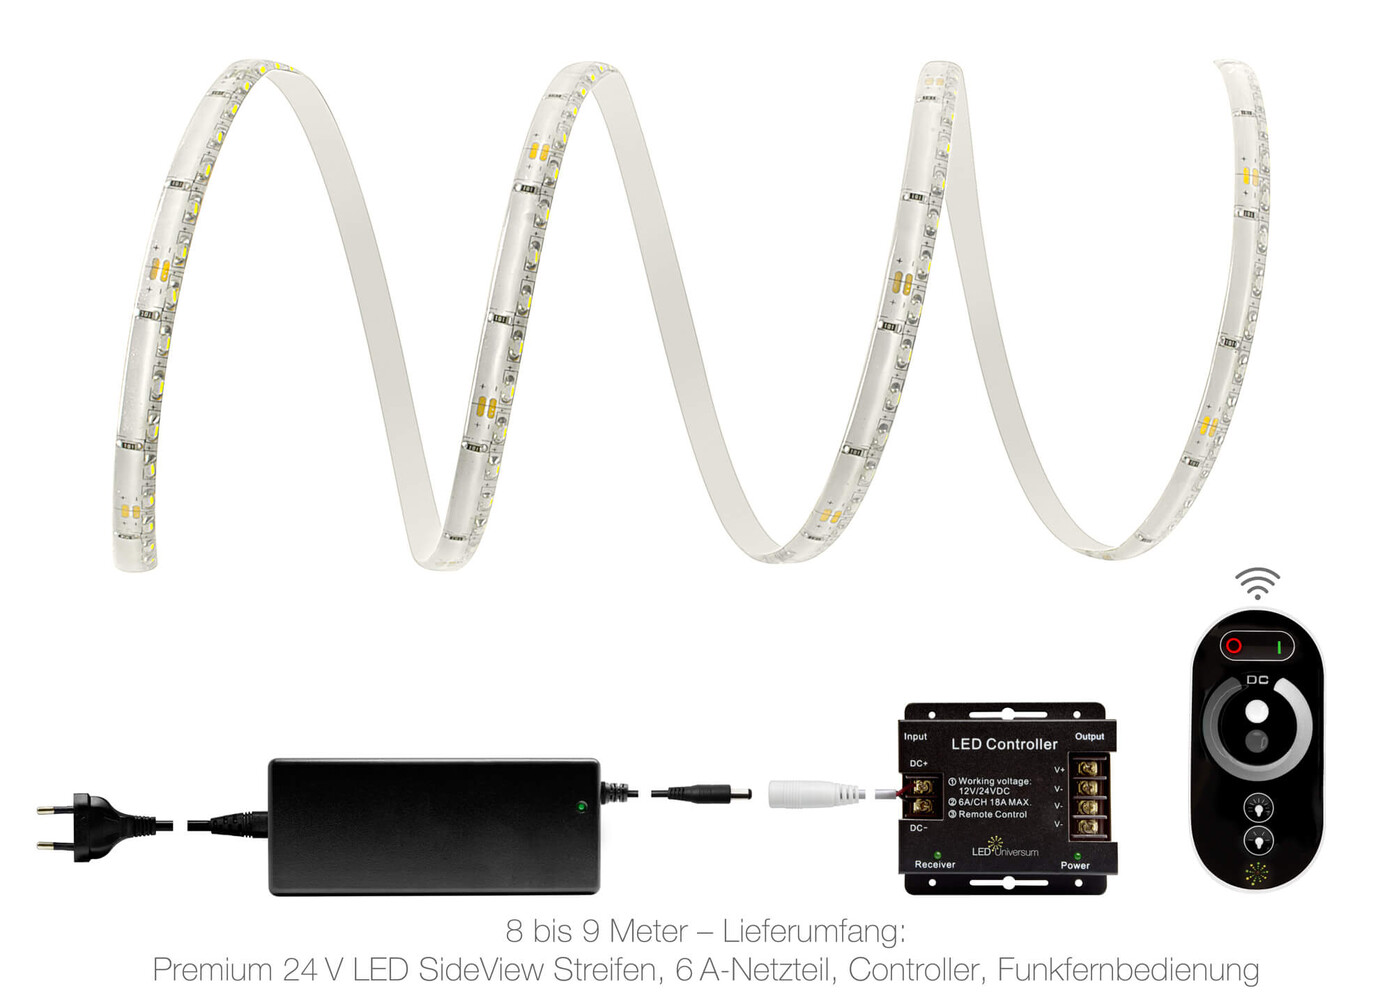 Hochqualitativer, warmweißer LED Streifen von LED Universum mit integrierter IP65 Technologie